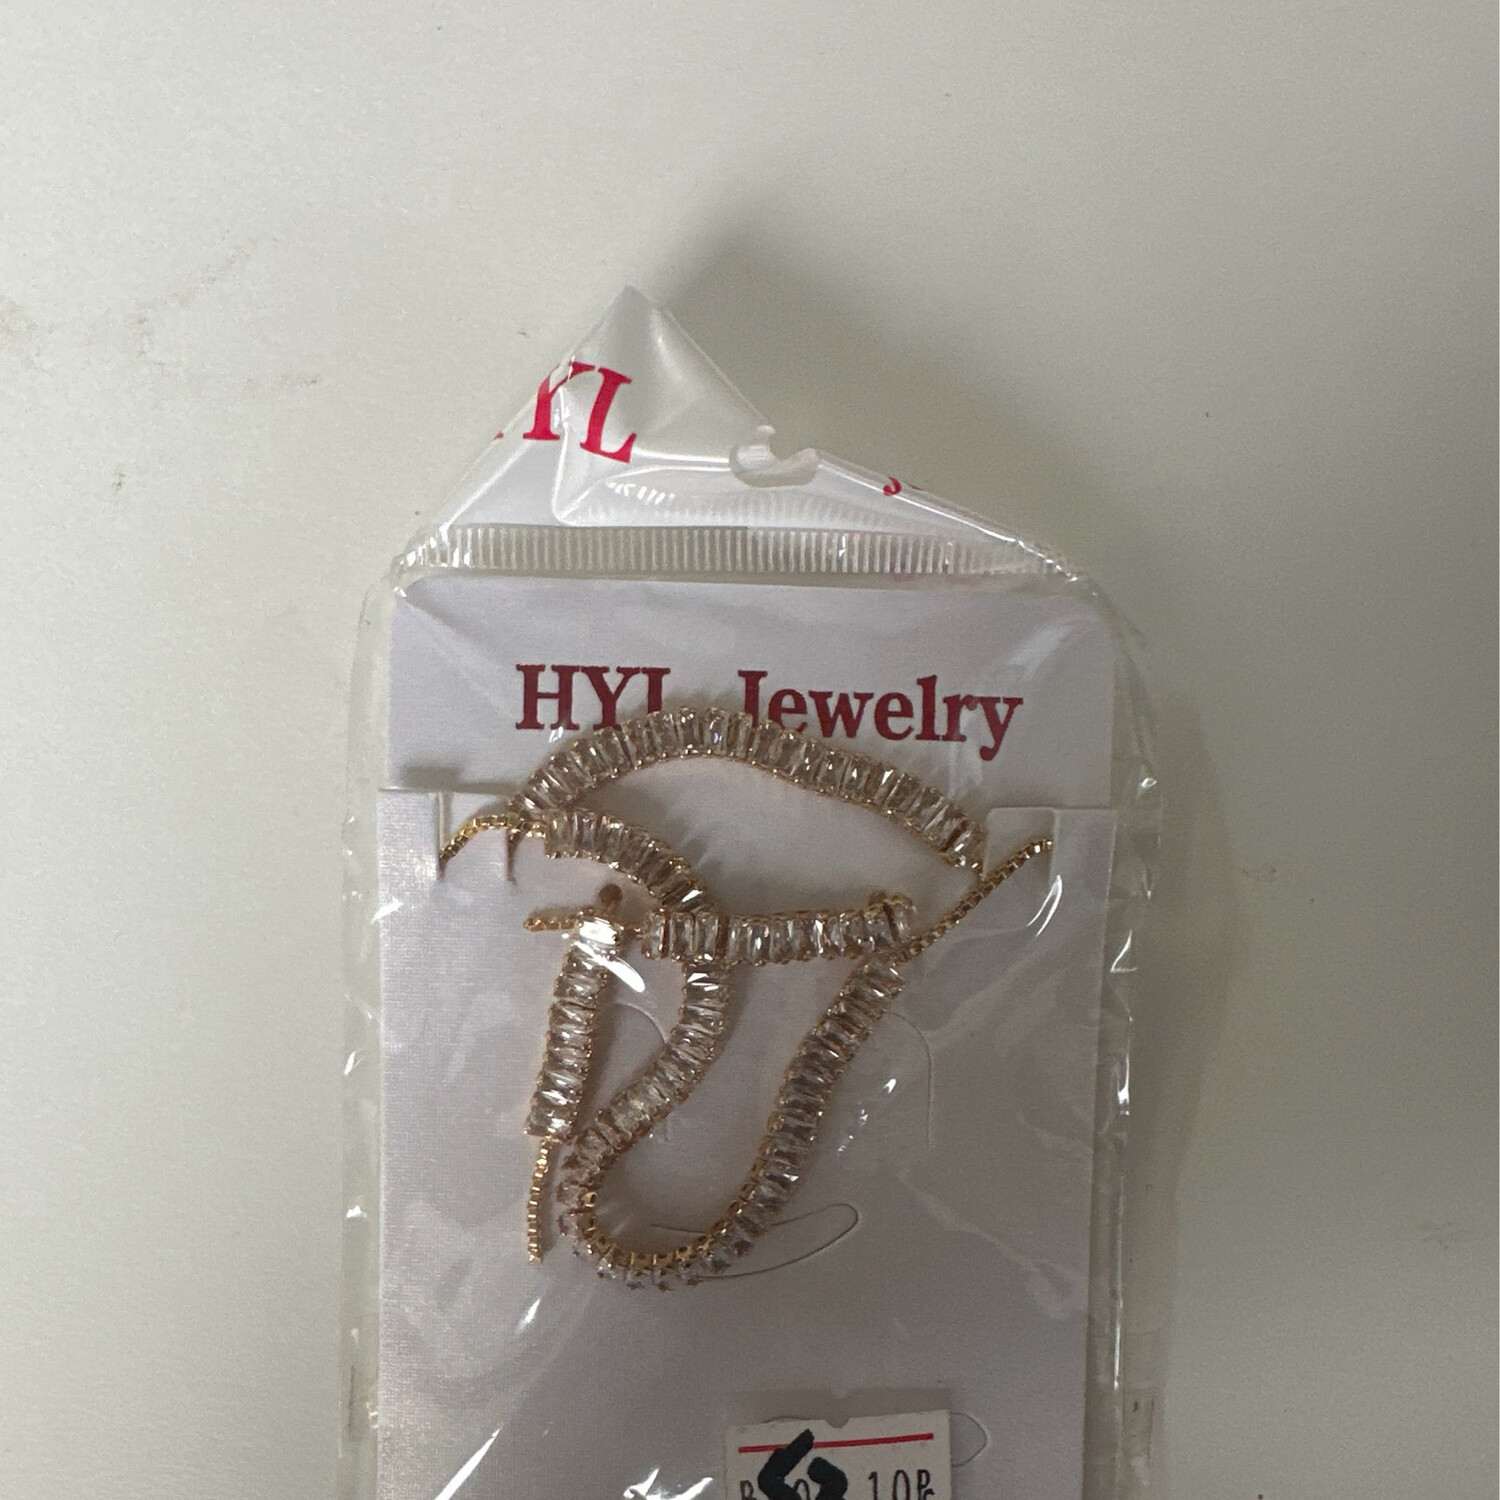 HYL Jewelry - Silver